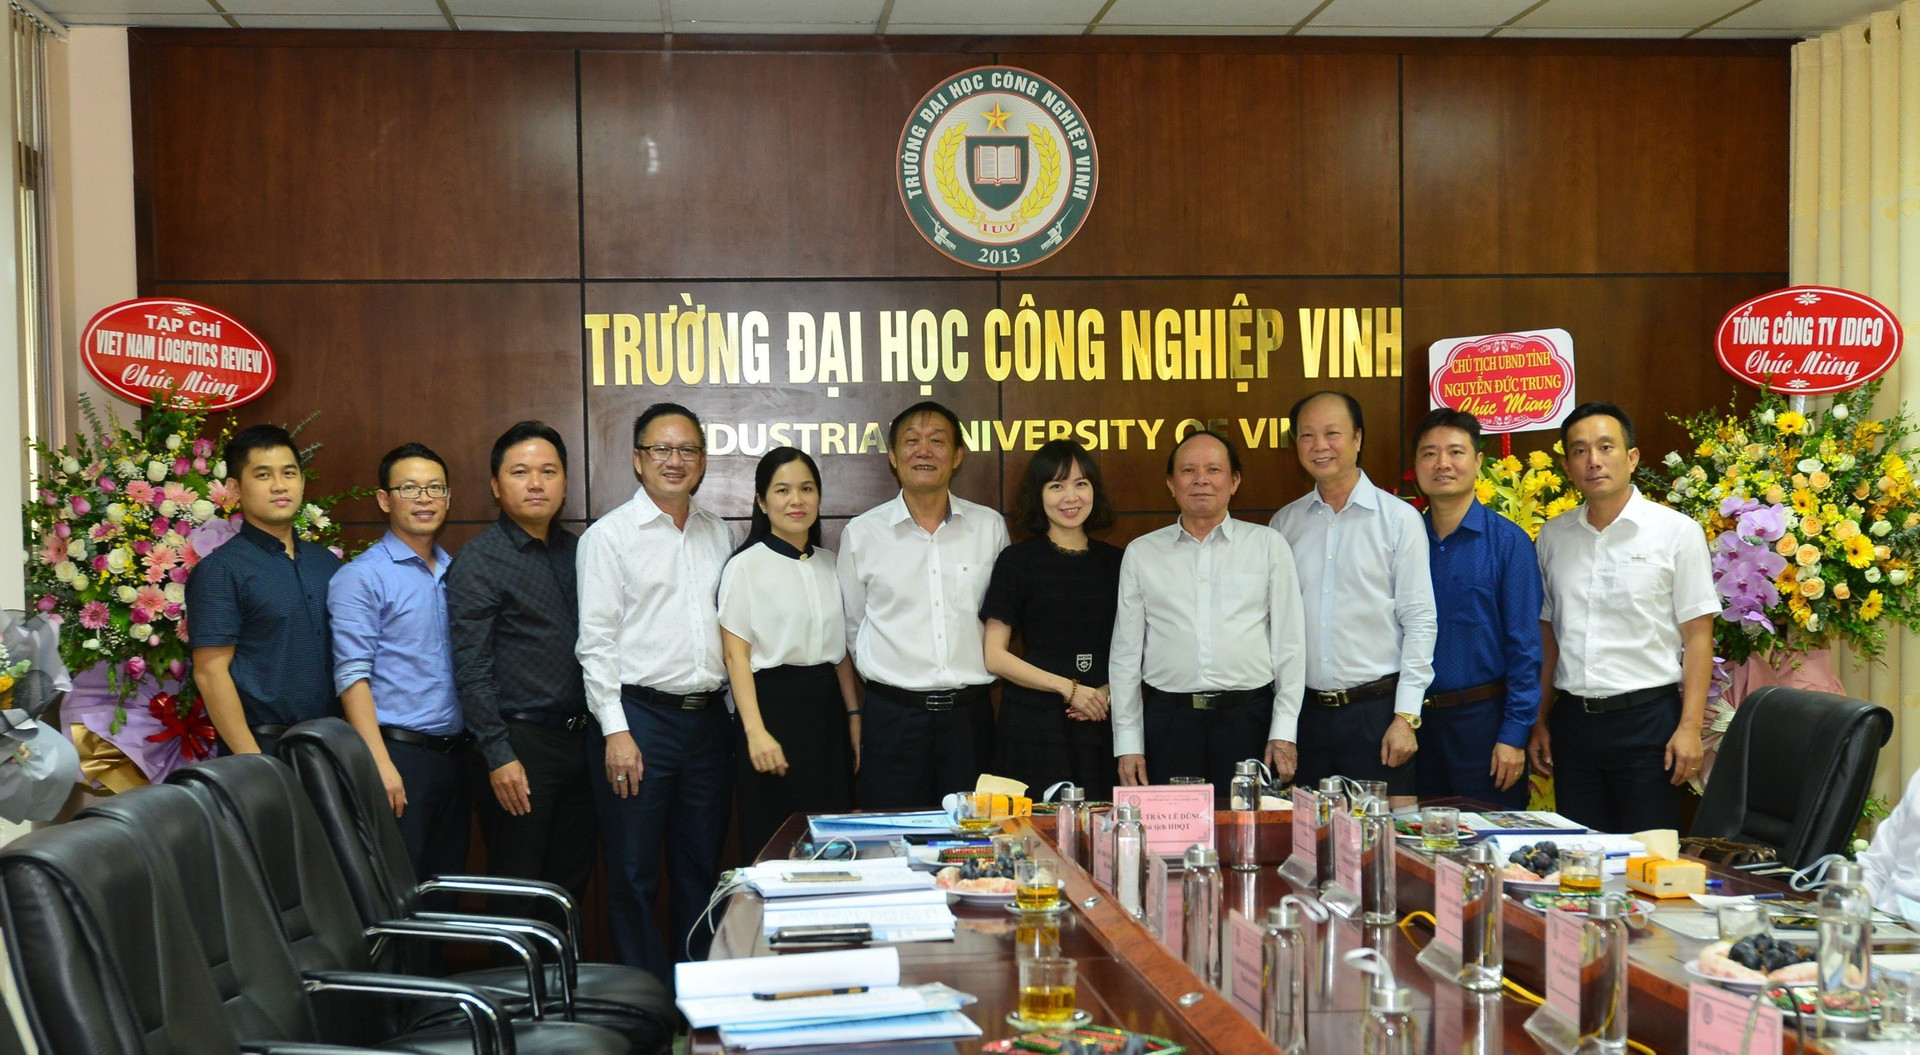 Ông Trần Lê Dũng, TS. Hà Văn Hải, ông Nguyễn Đình Thắng (tính từ vị trí thứ 6, từ trái sang phải) chụp ảnh lưu niệm cùng Ban Lãnh đạo trường Đại học Công nghiệp Vinh 